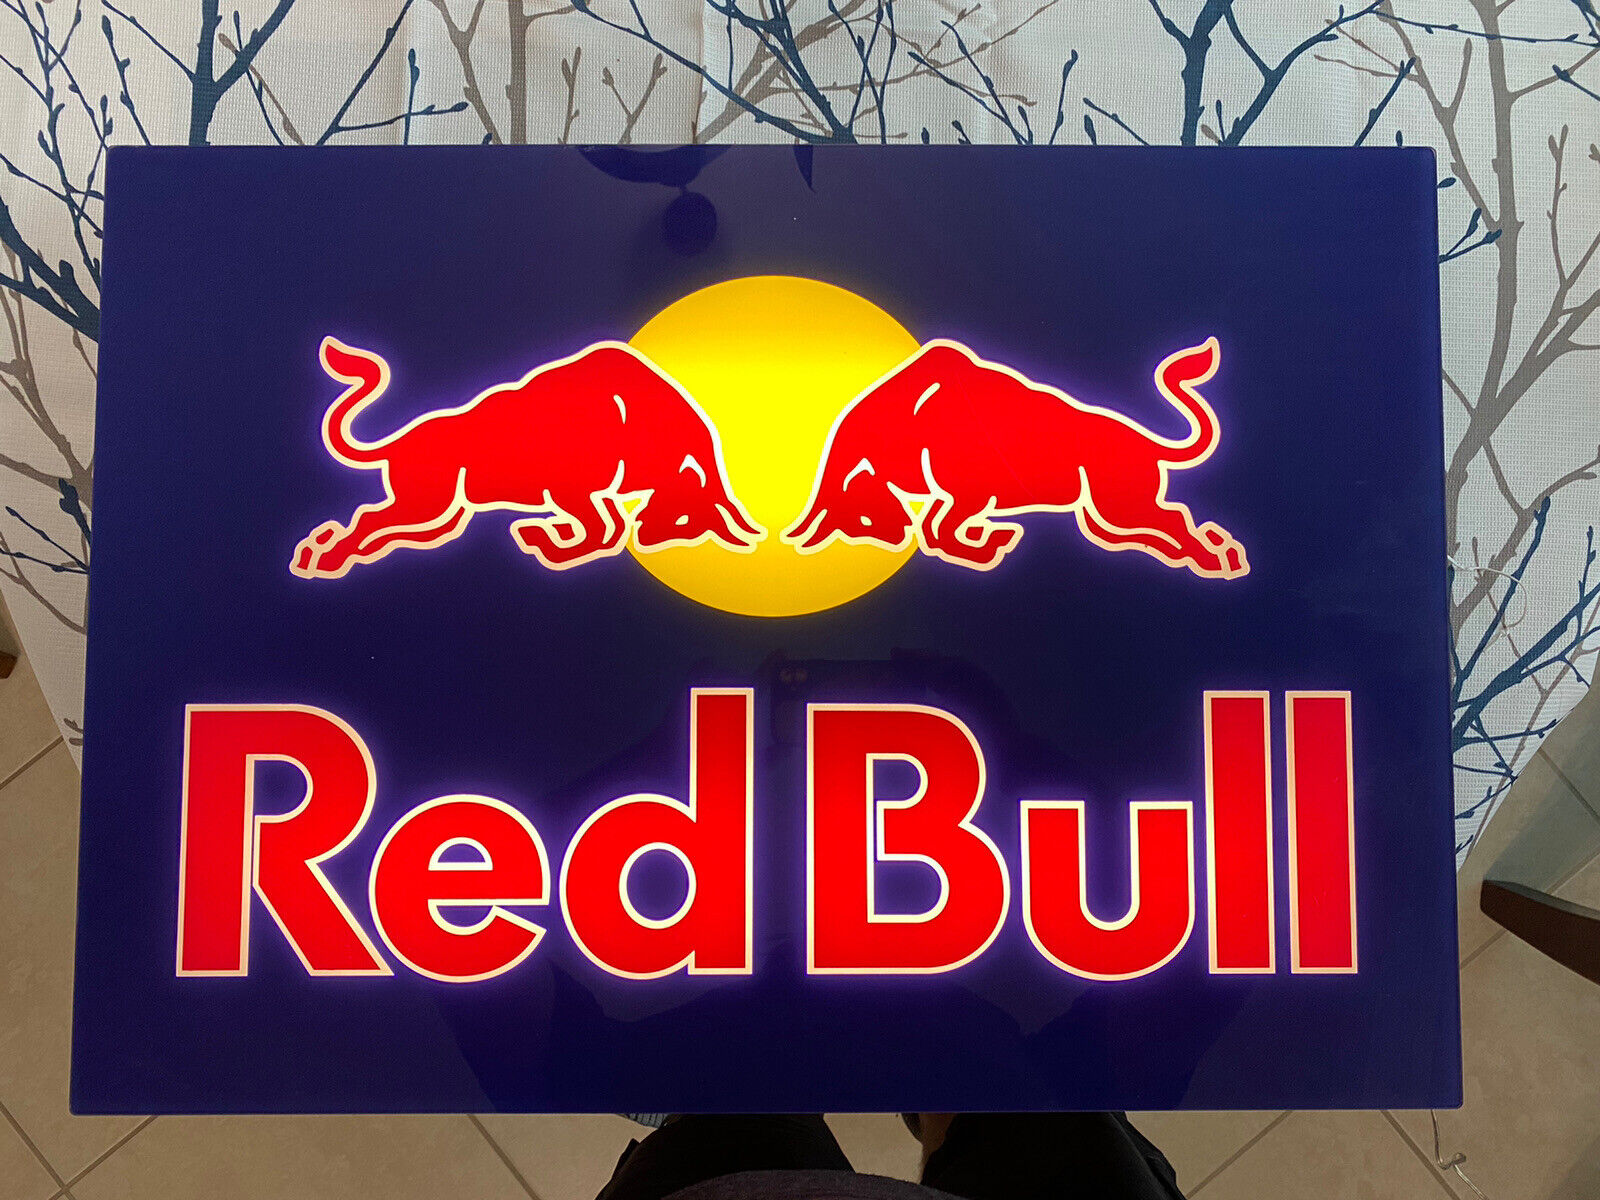 Redbull light up sign F1 motorsports made in Austria